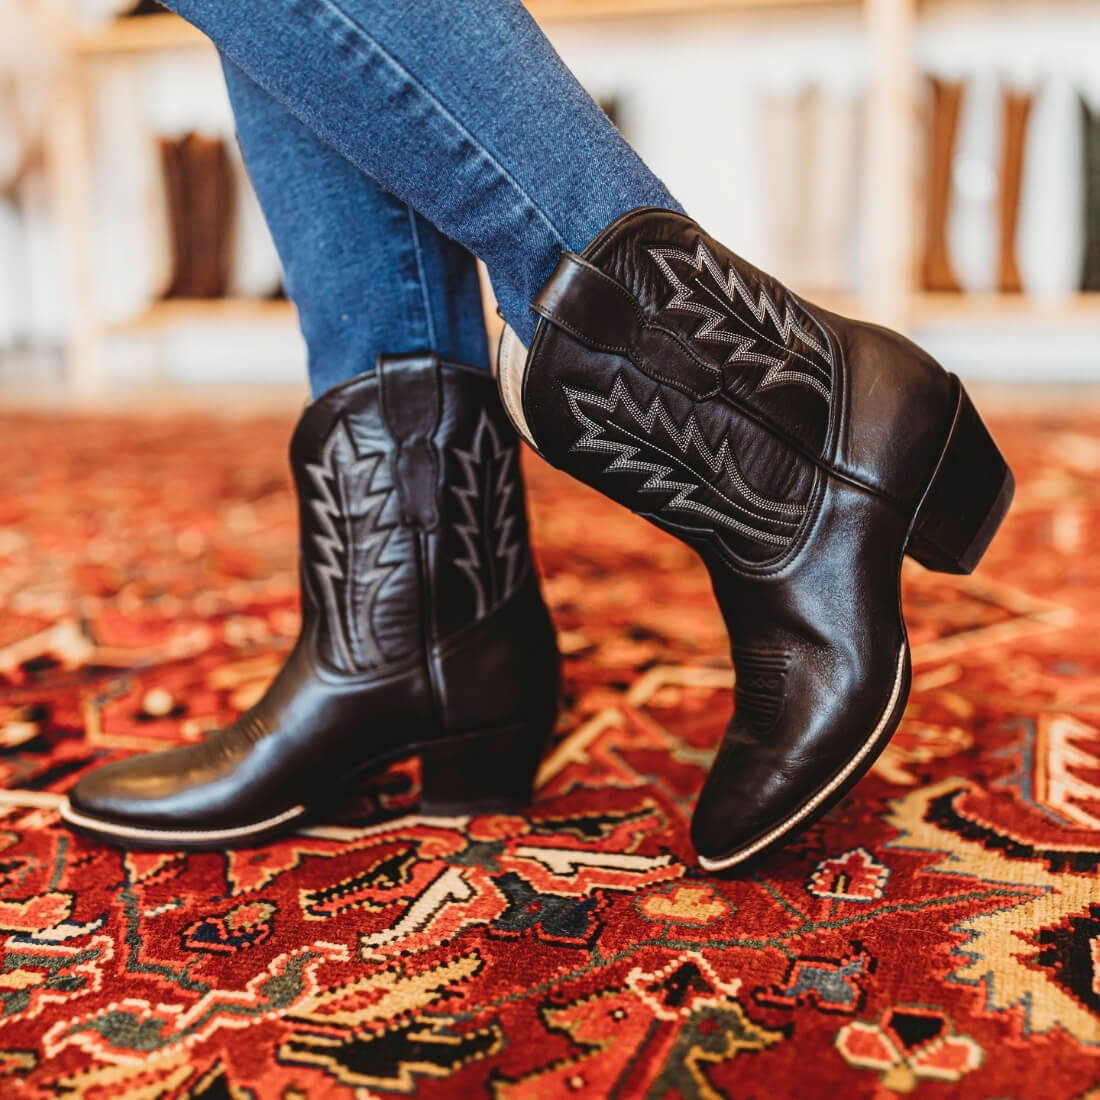 Short Cowboy Boots